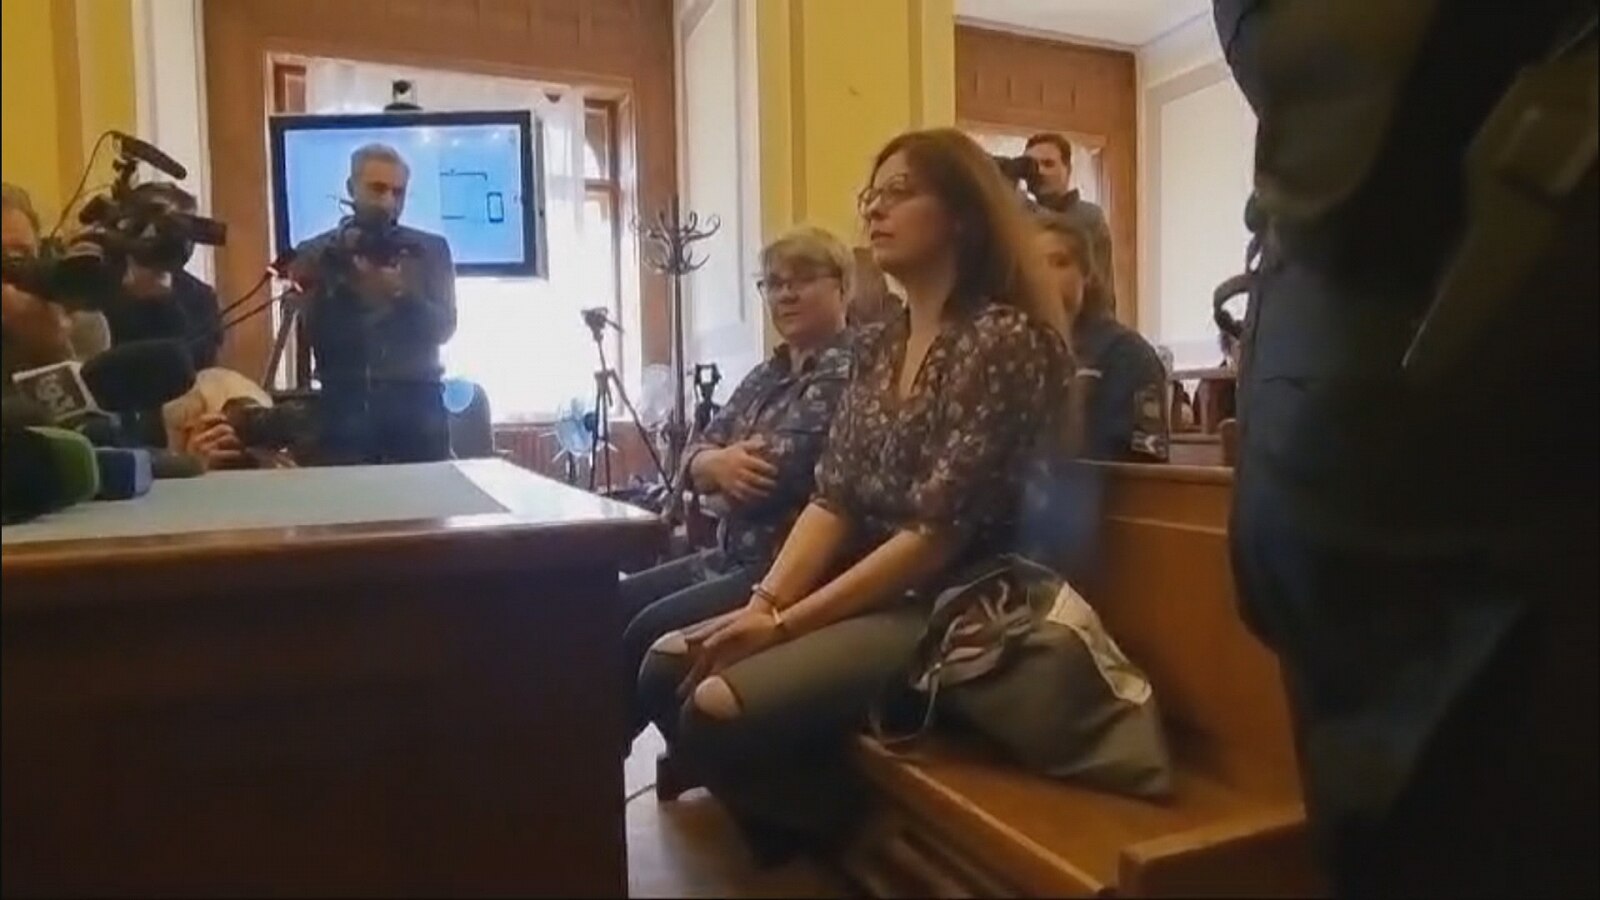 Le immagini di Ilaria Salis in tribunale a Budapest